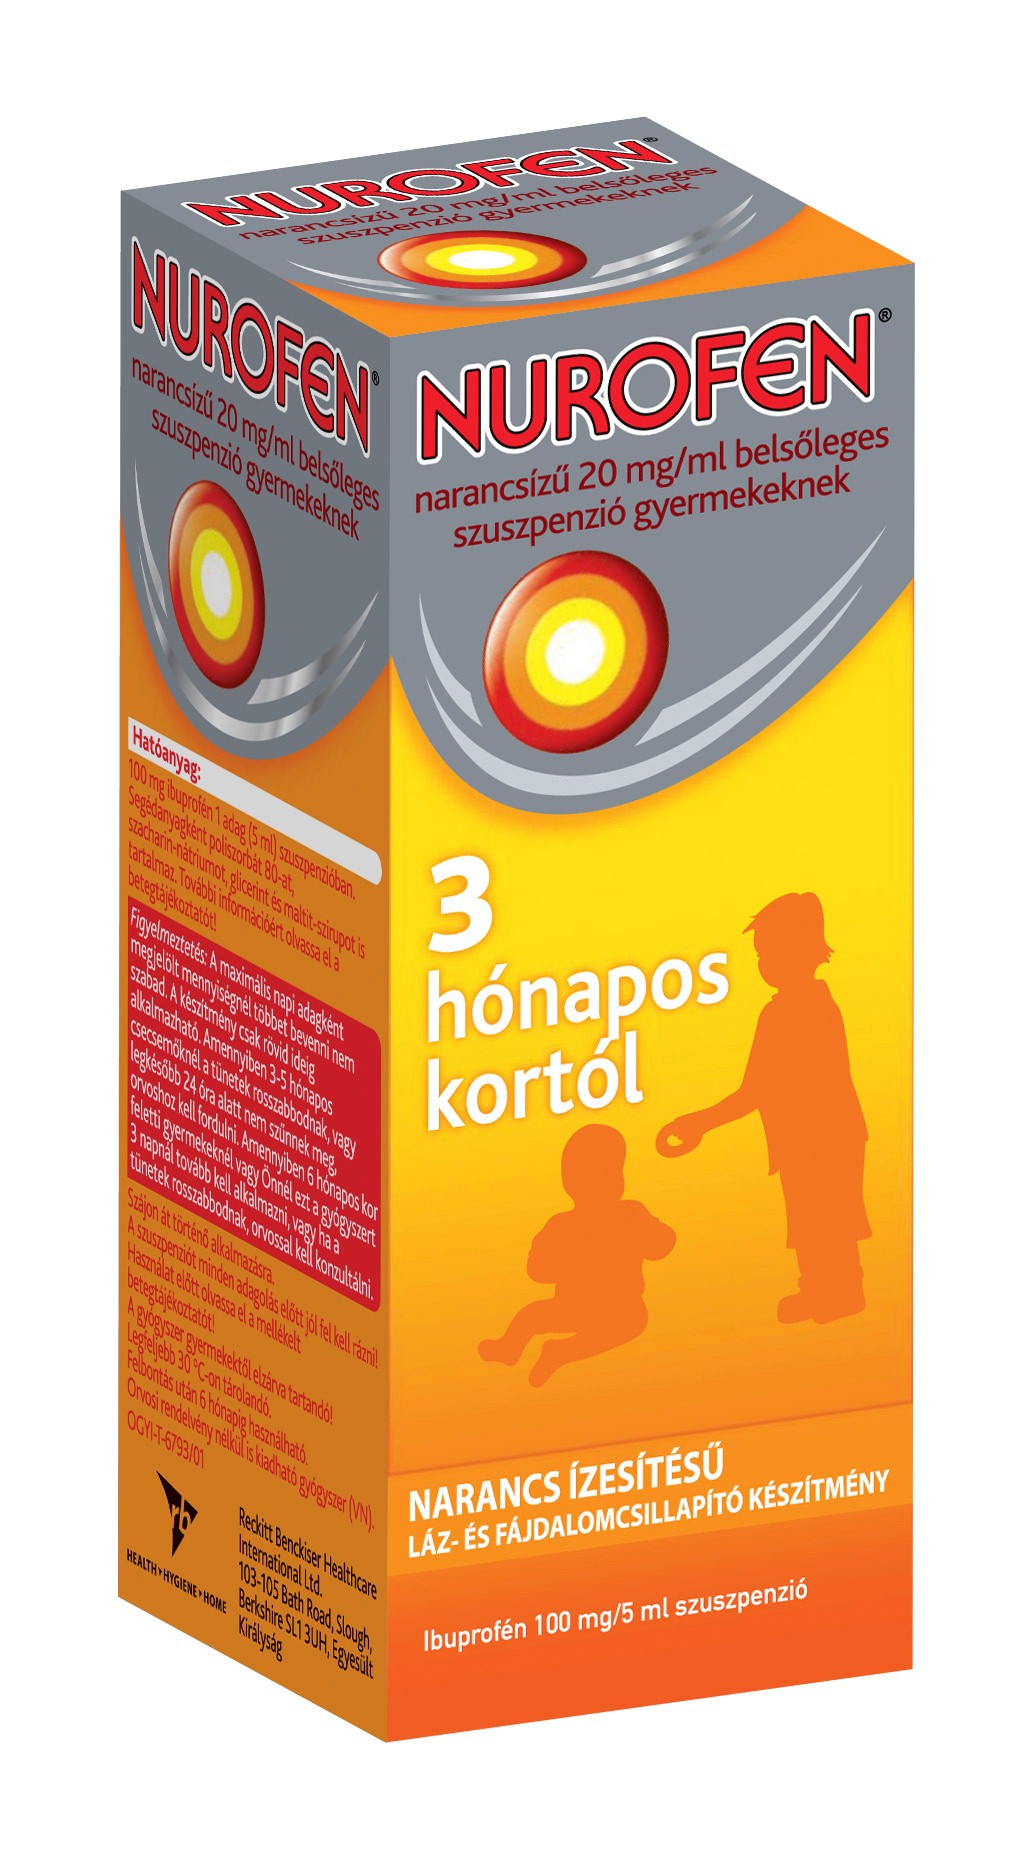 Nurofen narancsízű 20 mg/ml belsőleges szuszpenzió gyermekeknek